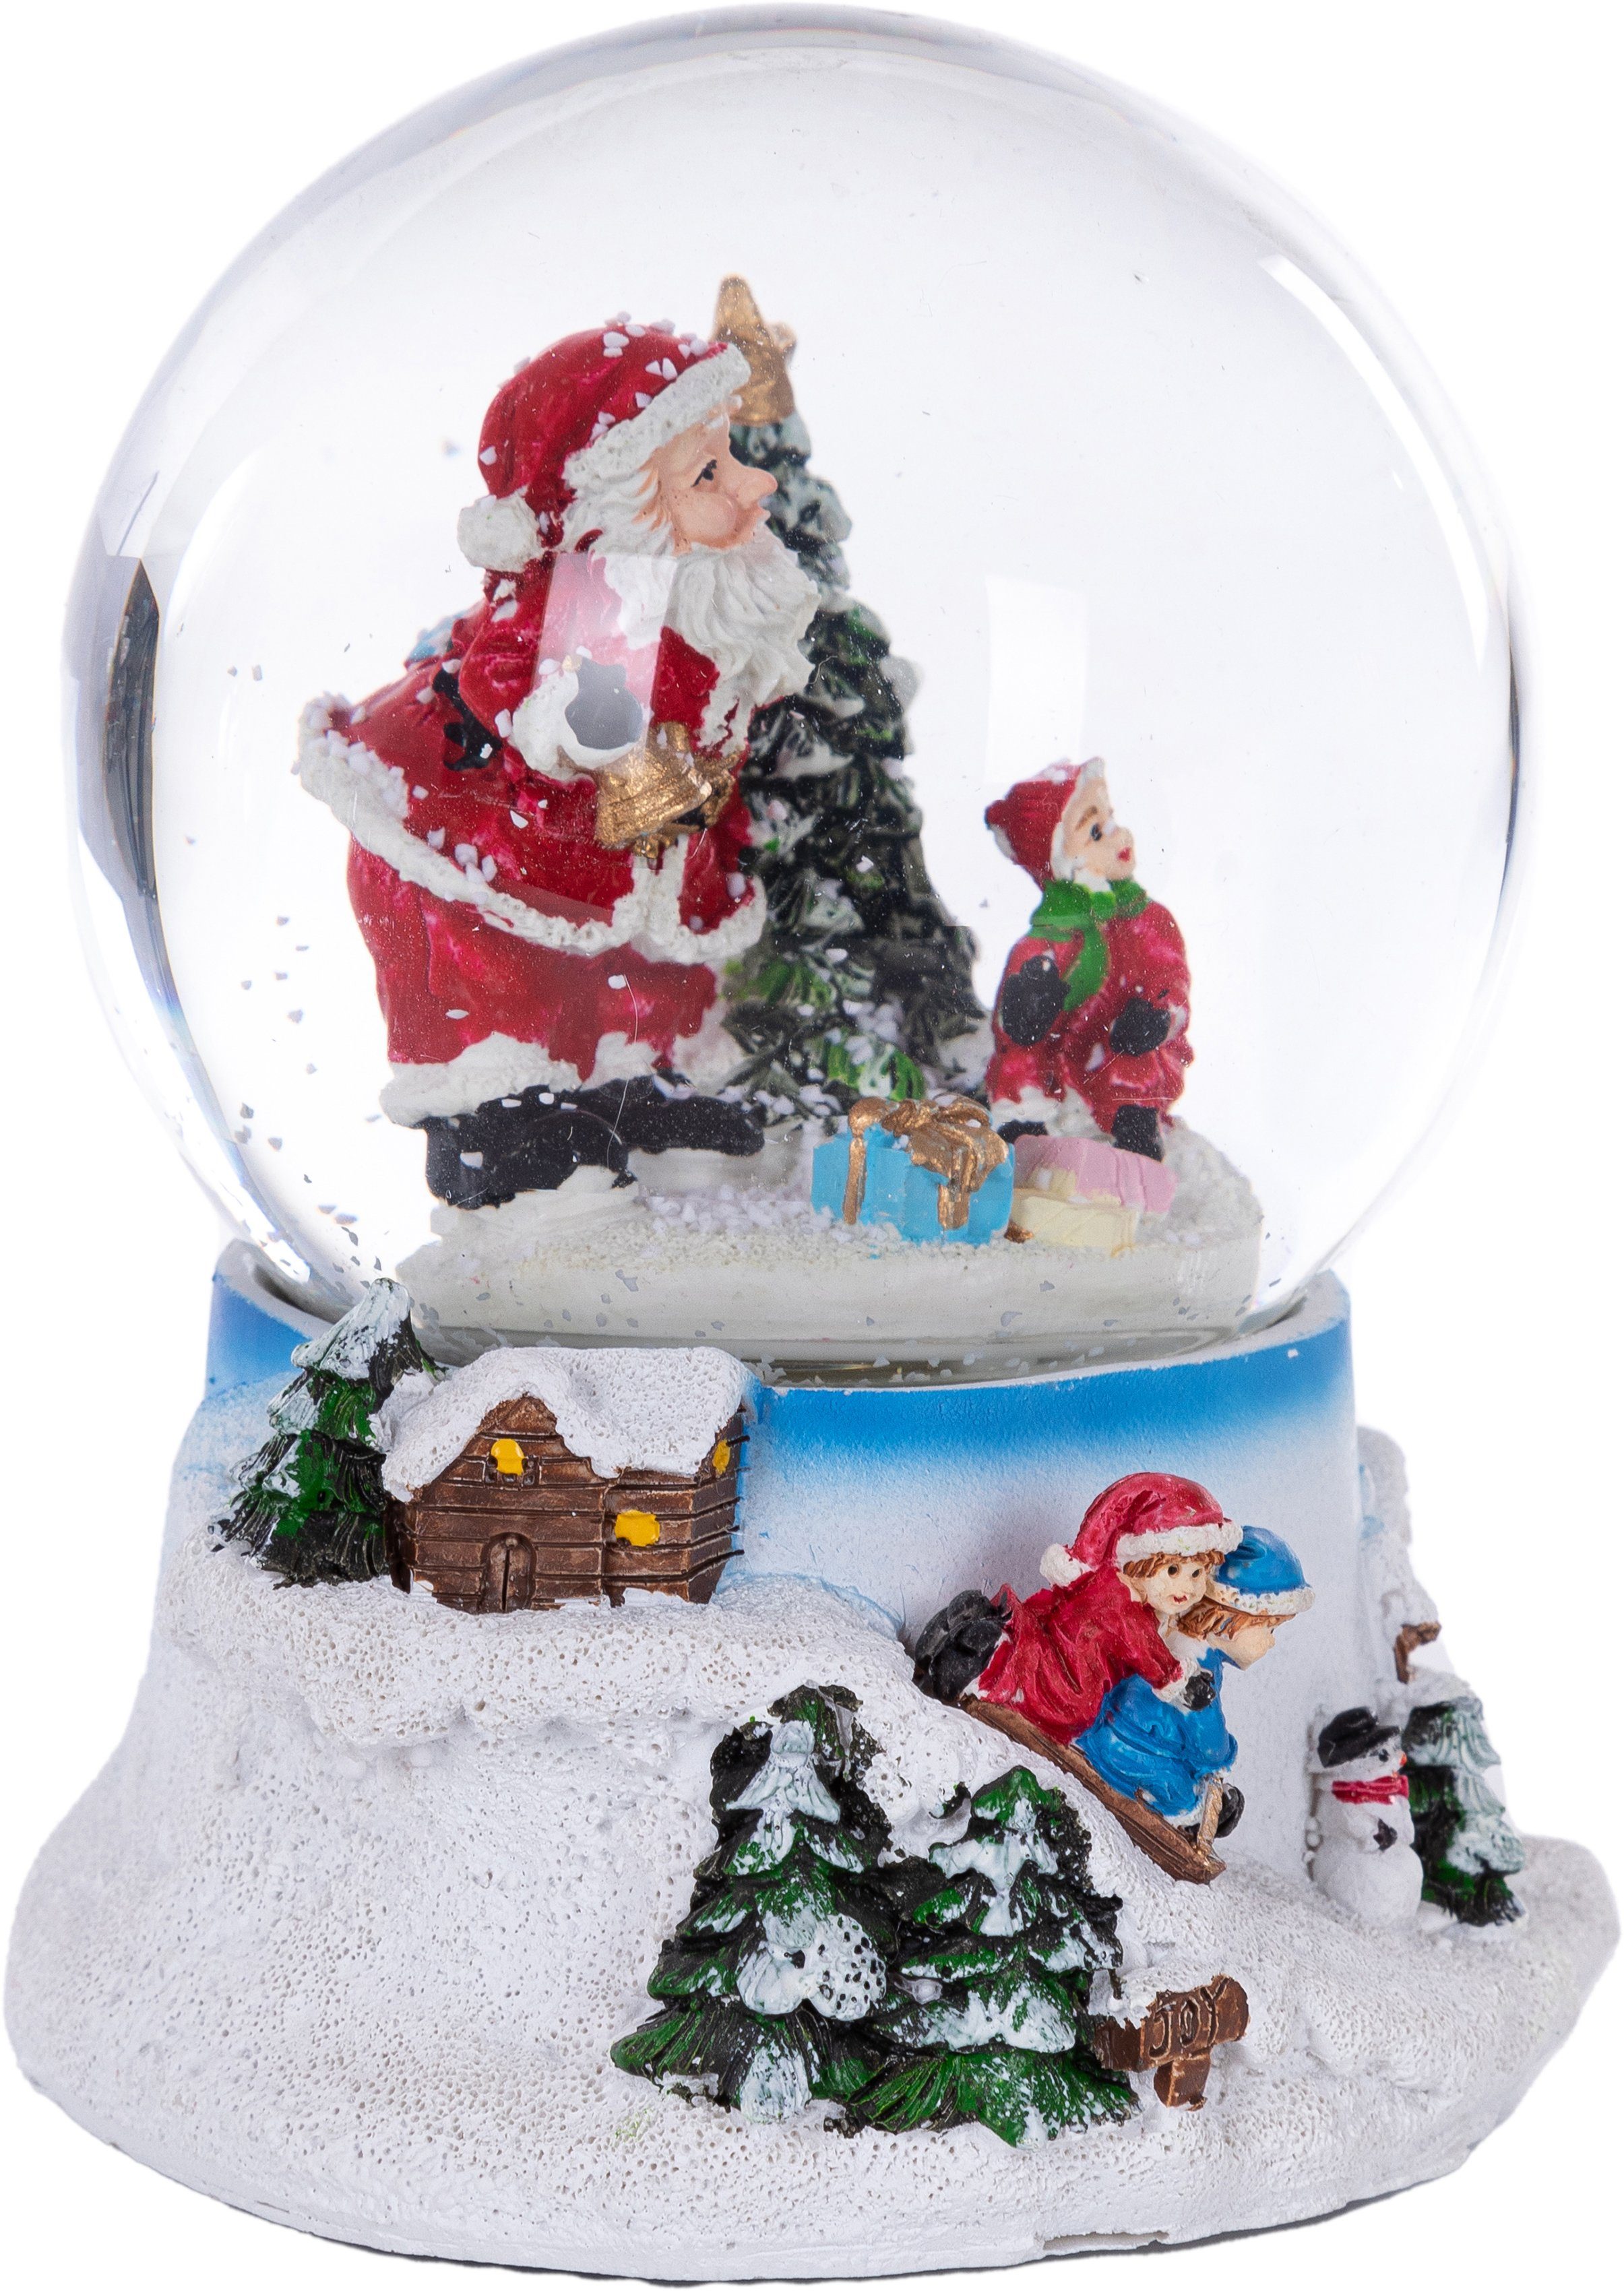 LED Deko Weihnachtsmann im Auto rot mit Schnee Glitzer 37 x 23 cm